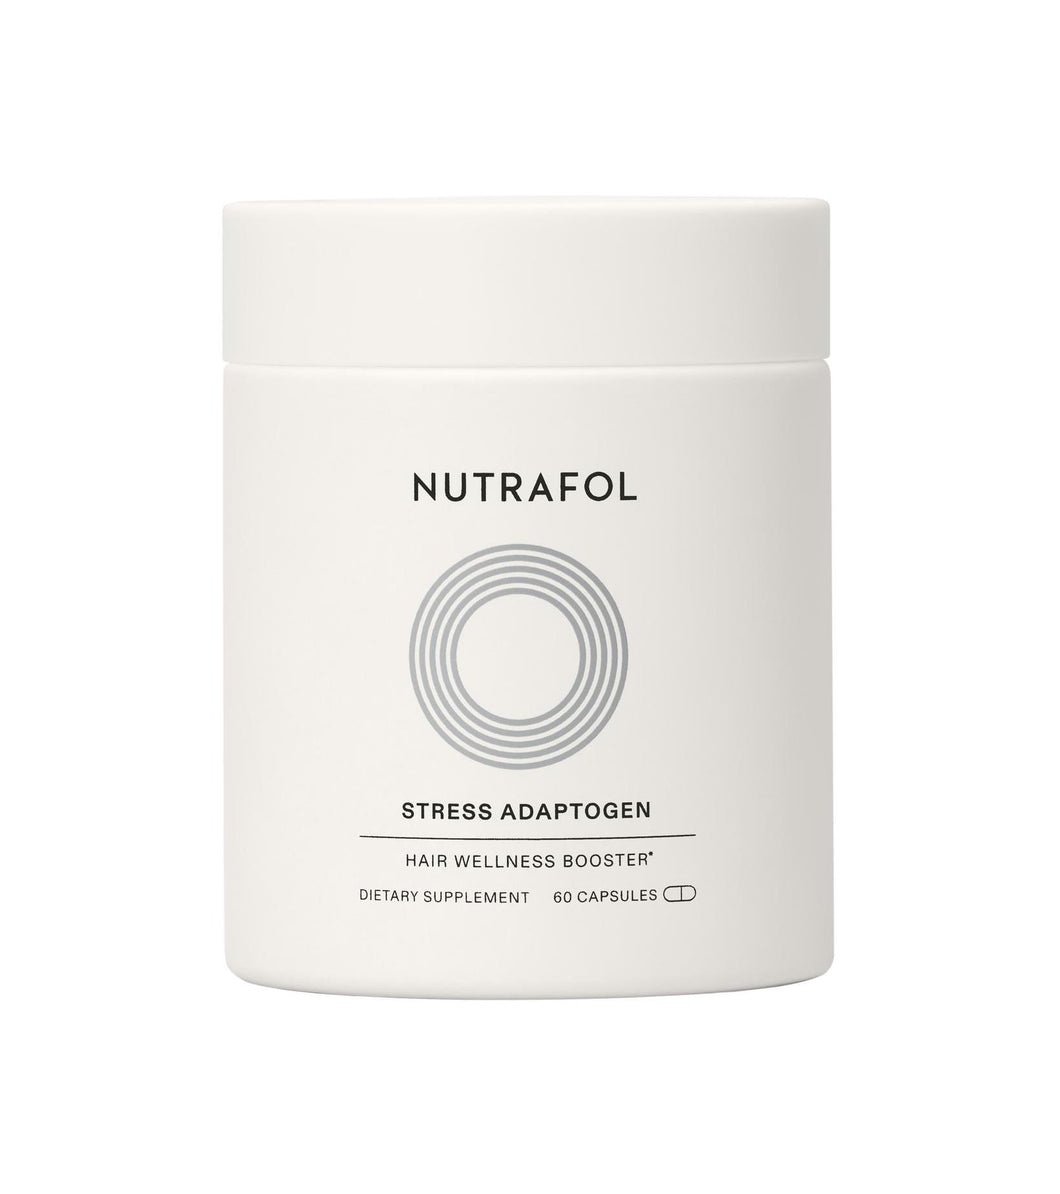 Nutrafol - Stress Adaptogen white bottle with twist top.